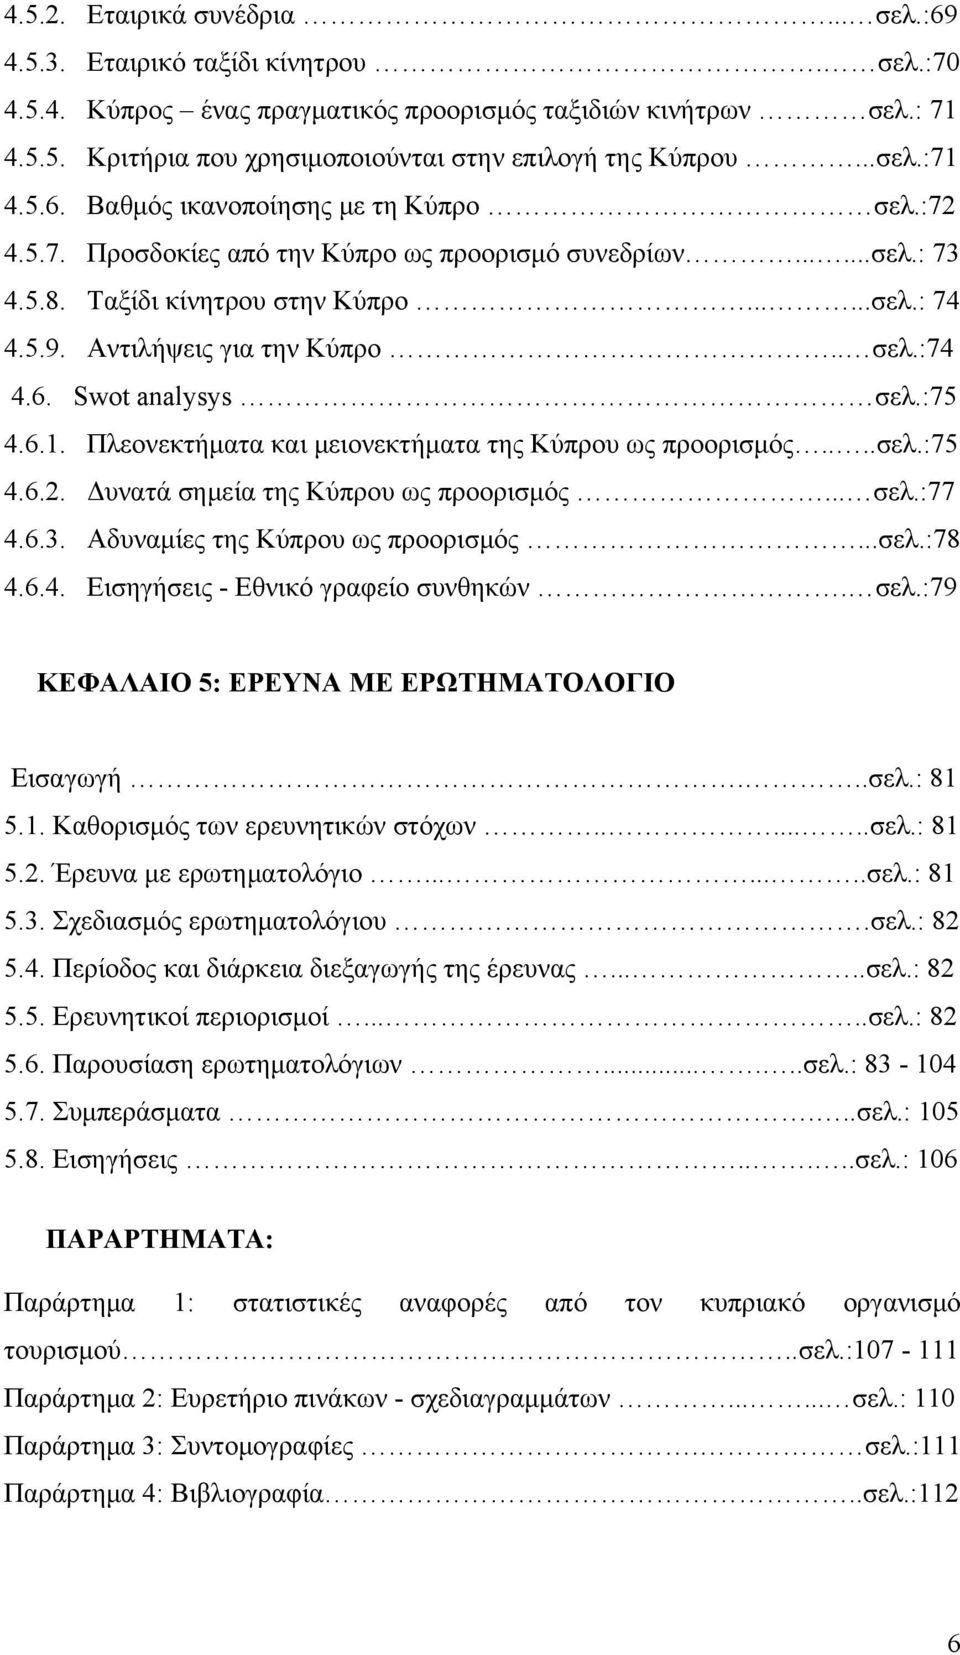 Αντιλήψεις για την Κύπρο.. σελ.:74 4.6. Swot analysys σελ.:75 4.6.1. Πλεονεκτήματα και μειονεκτήματα της Κύπρου ως προορισμός....σελ.:75 4.6.2. Δυνατά σημεία της Κύπρου ως προορισμός... σελ.:77 4.6.3.